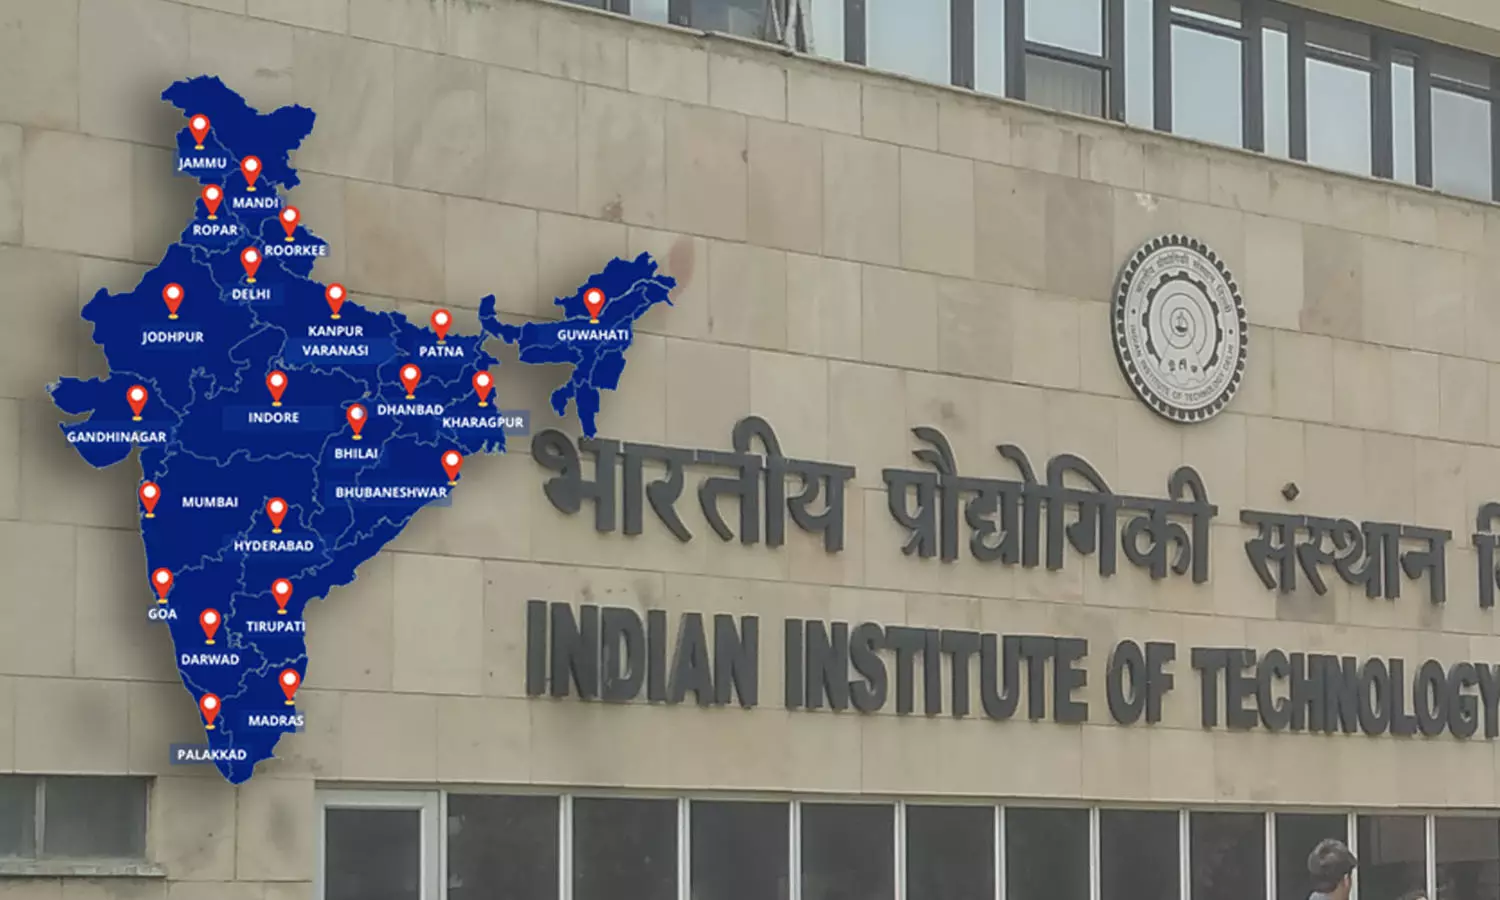 IIT Colleges MTech Admission: IIT मद्रास से लेकर IIT दिल्ली तक M.Tech के लिए देखिए GATE के टॉप 5 कॉलेज और पूरा एडमिशन प्रोसेस